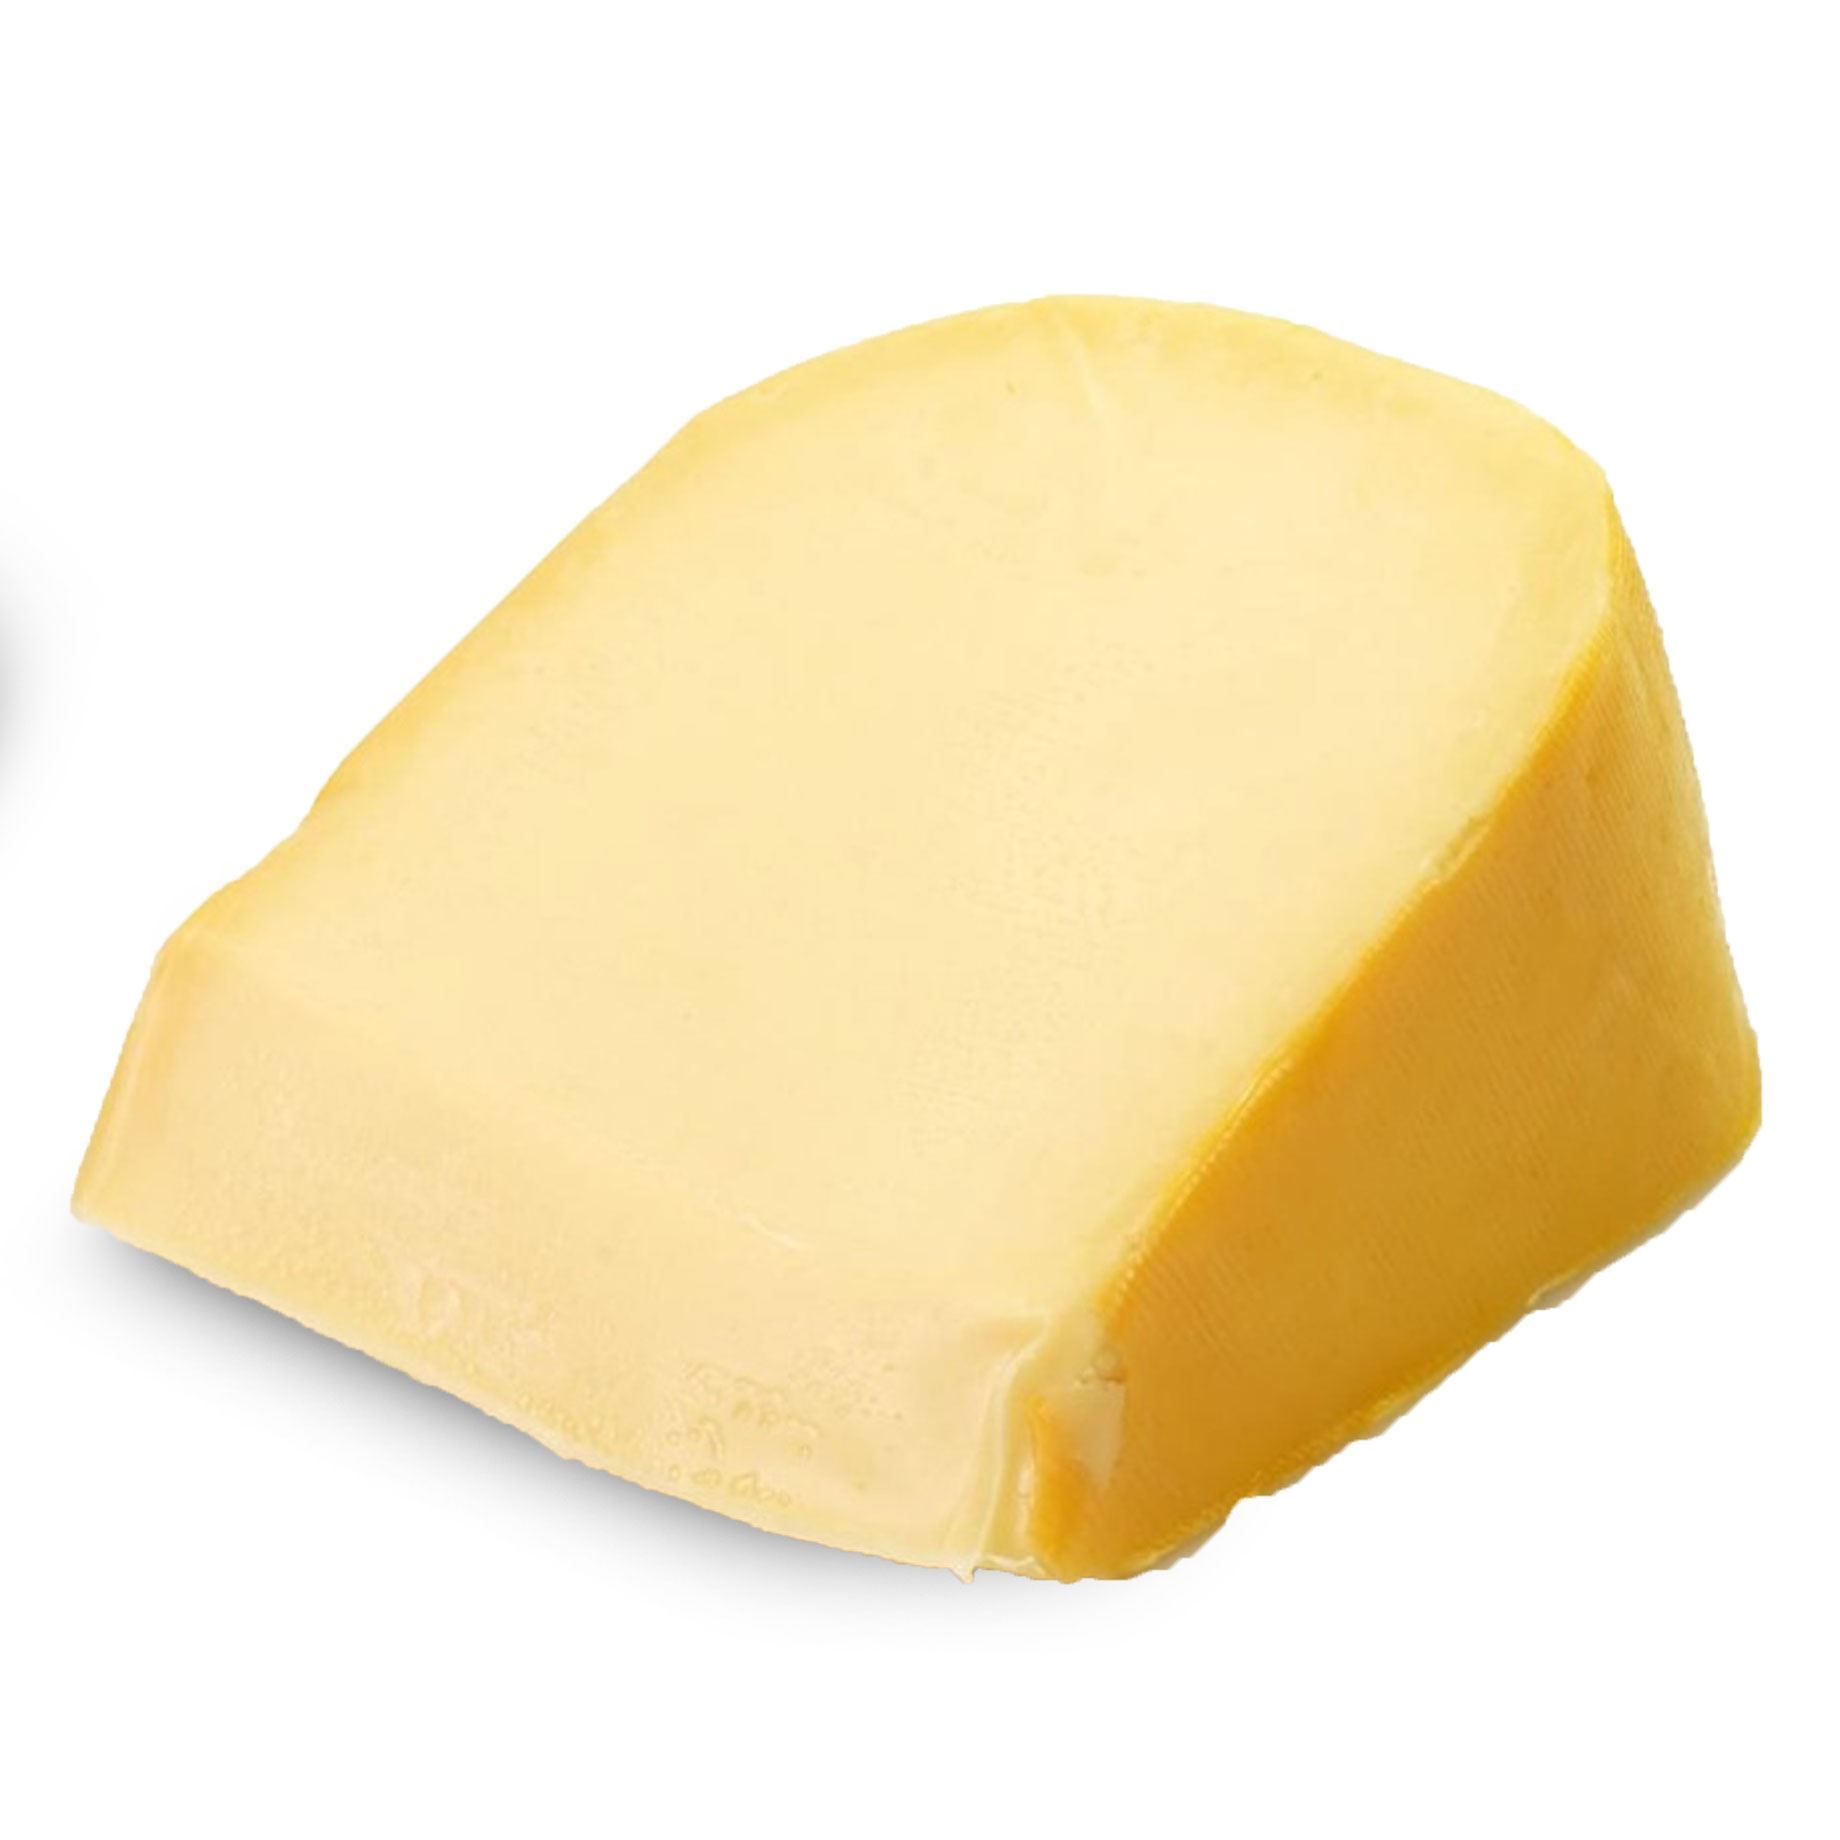 Gouda cheese – EKGS